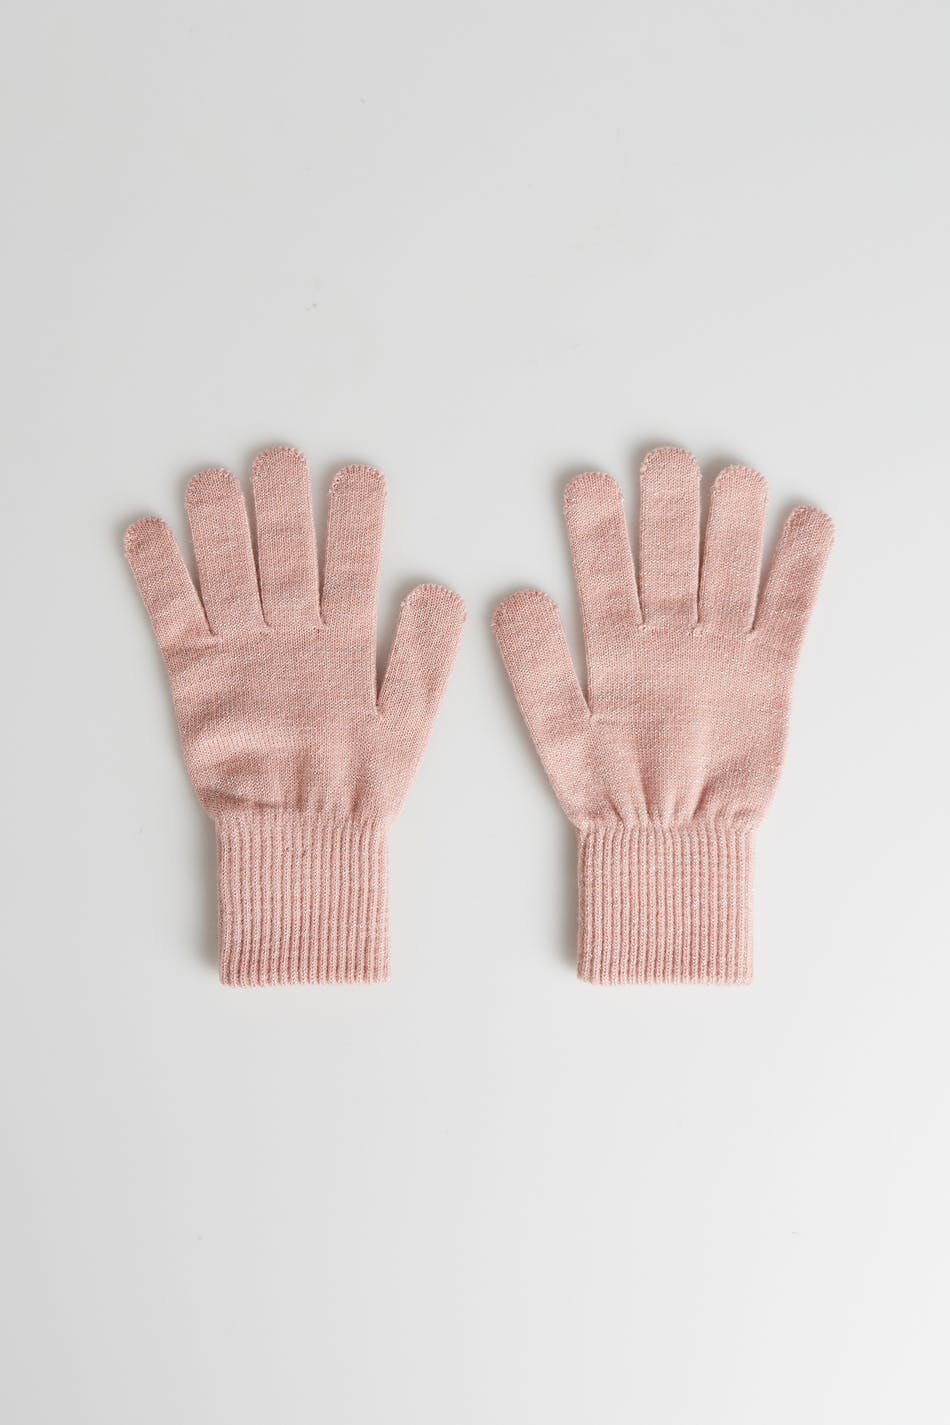 My gloves